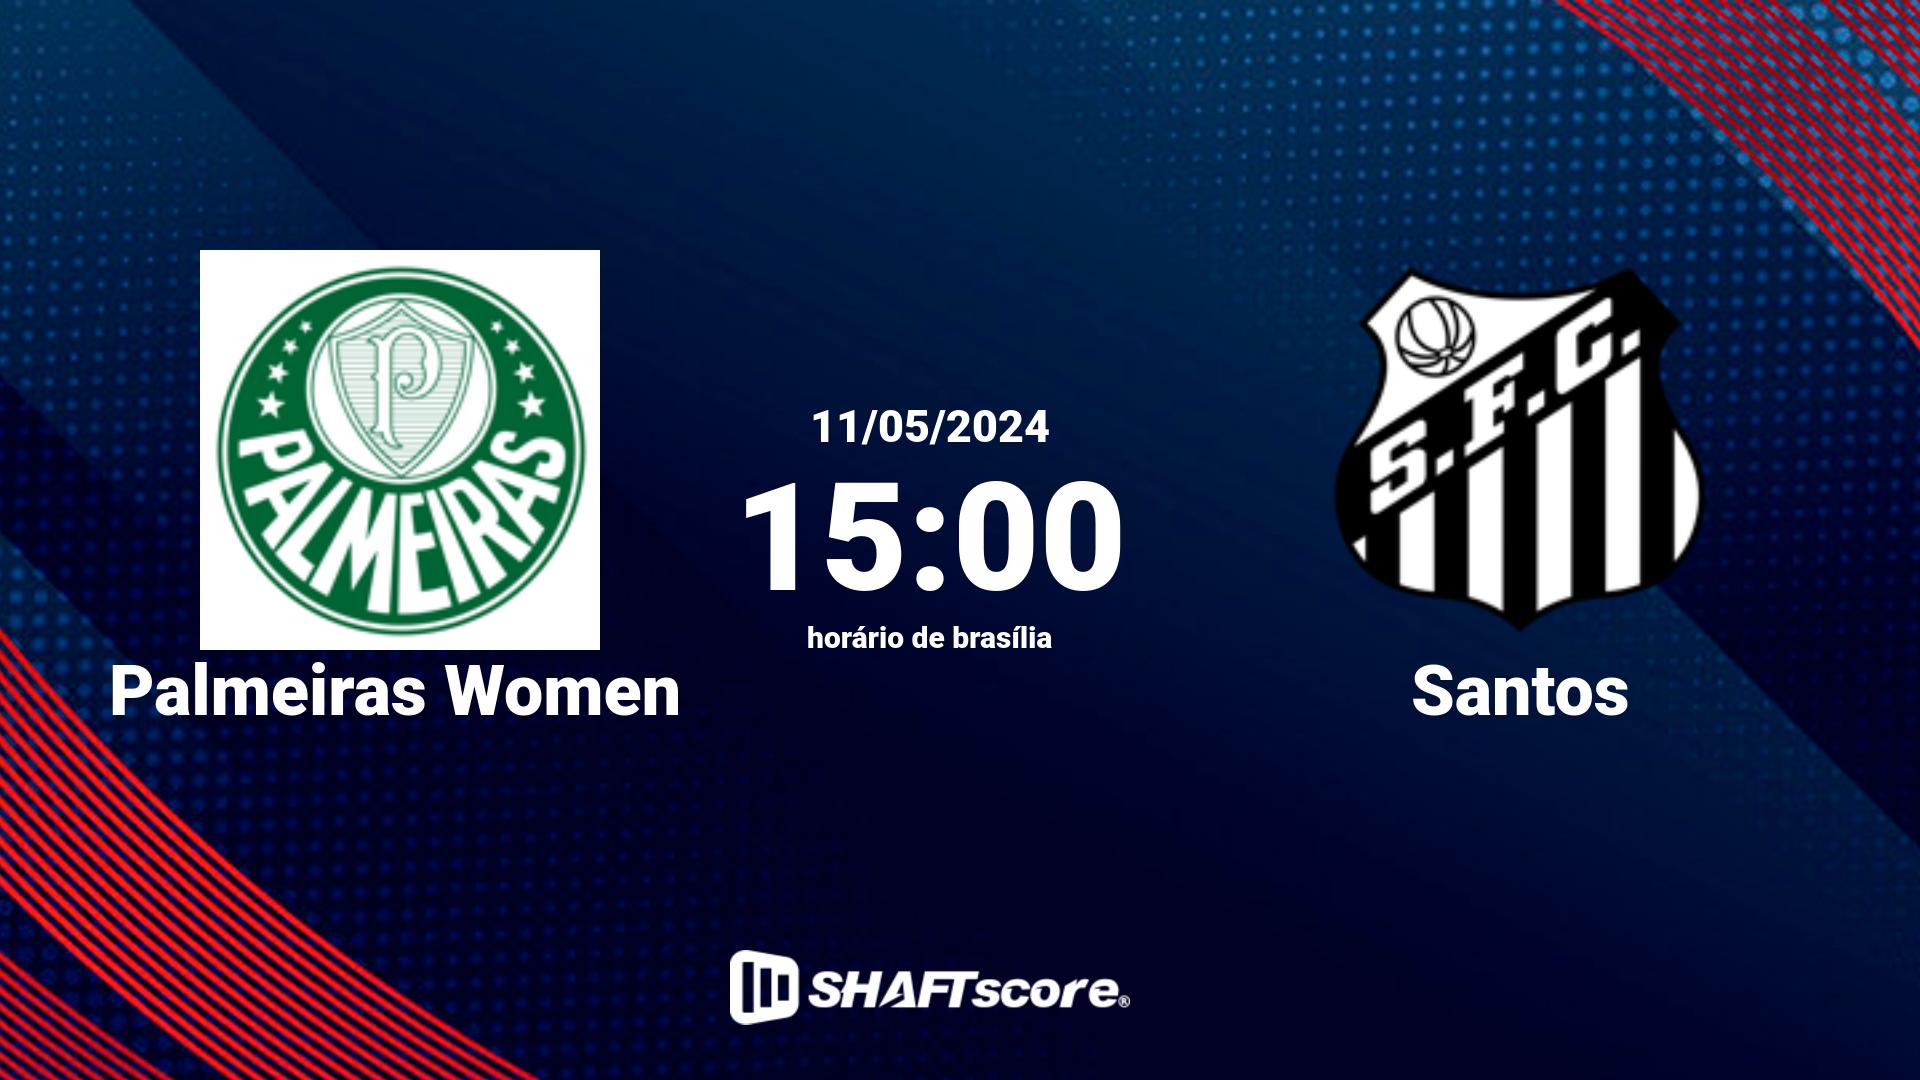 Estatísticas do jogo Palmeiras Women vs Santos 11.05 15:00